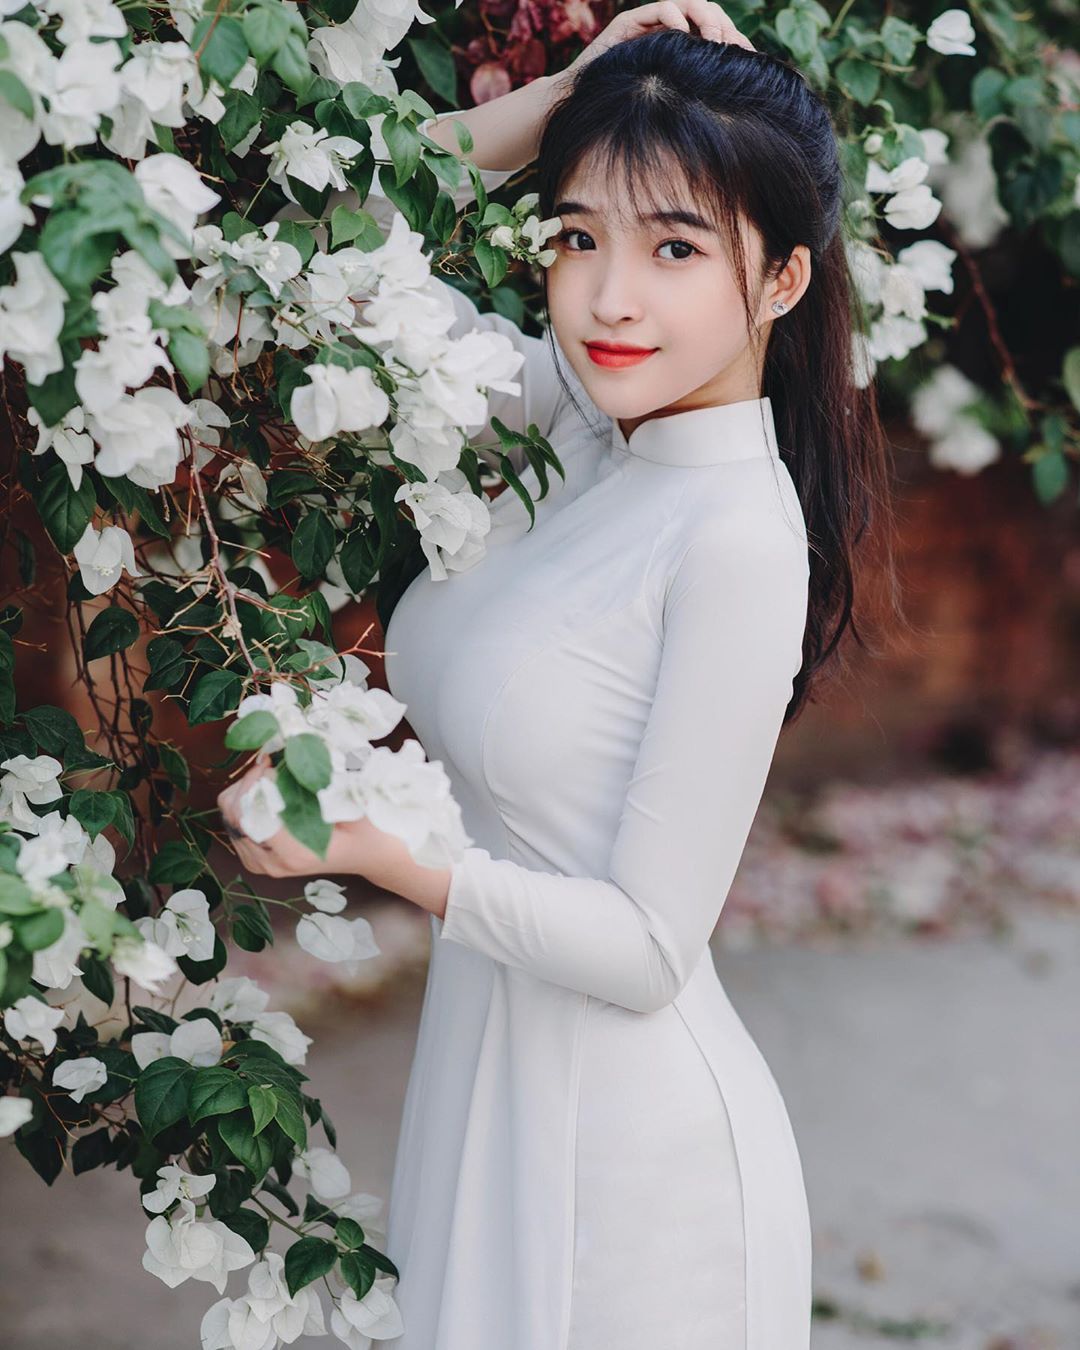 Nữ sinh Việt vừa tuổi 18 nổi tiếng nhờ mặc áo dài trắng tôn dáng vóc nữ thần - 2